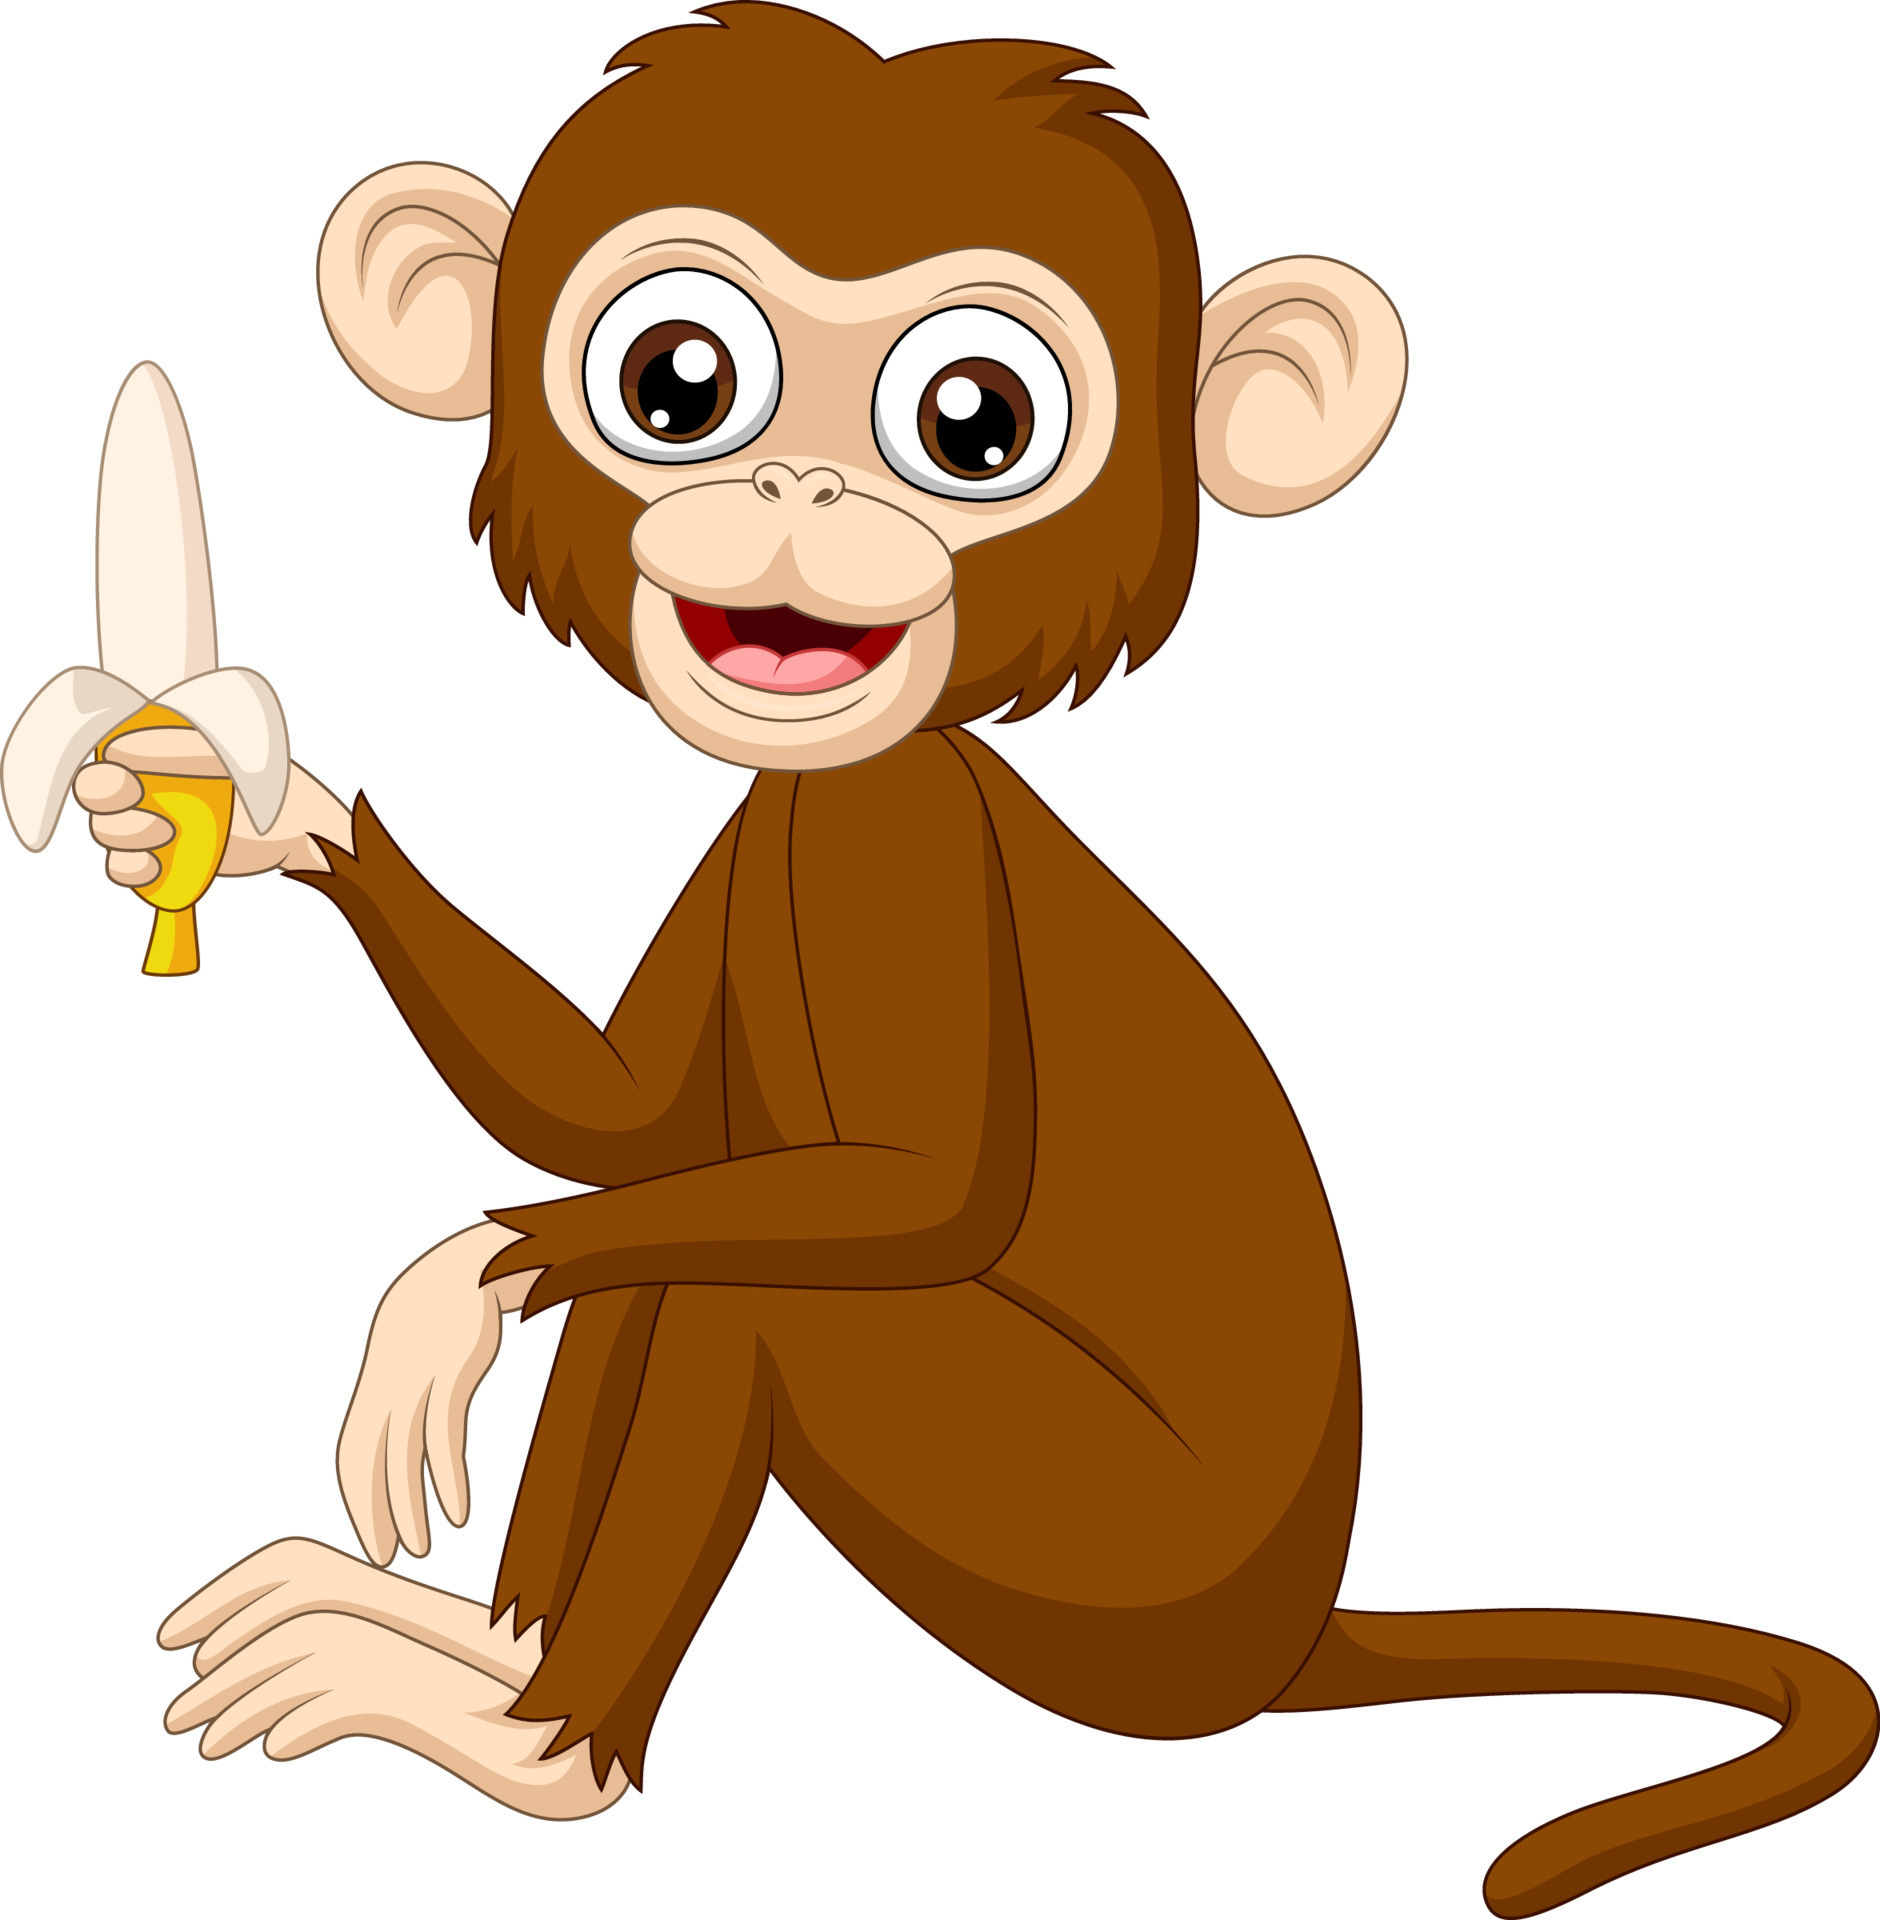 Ai Gerado Macaco Desenho Animado - Imagens grátis no Pixabay - Pixabay